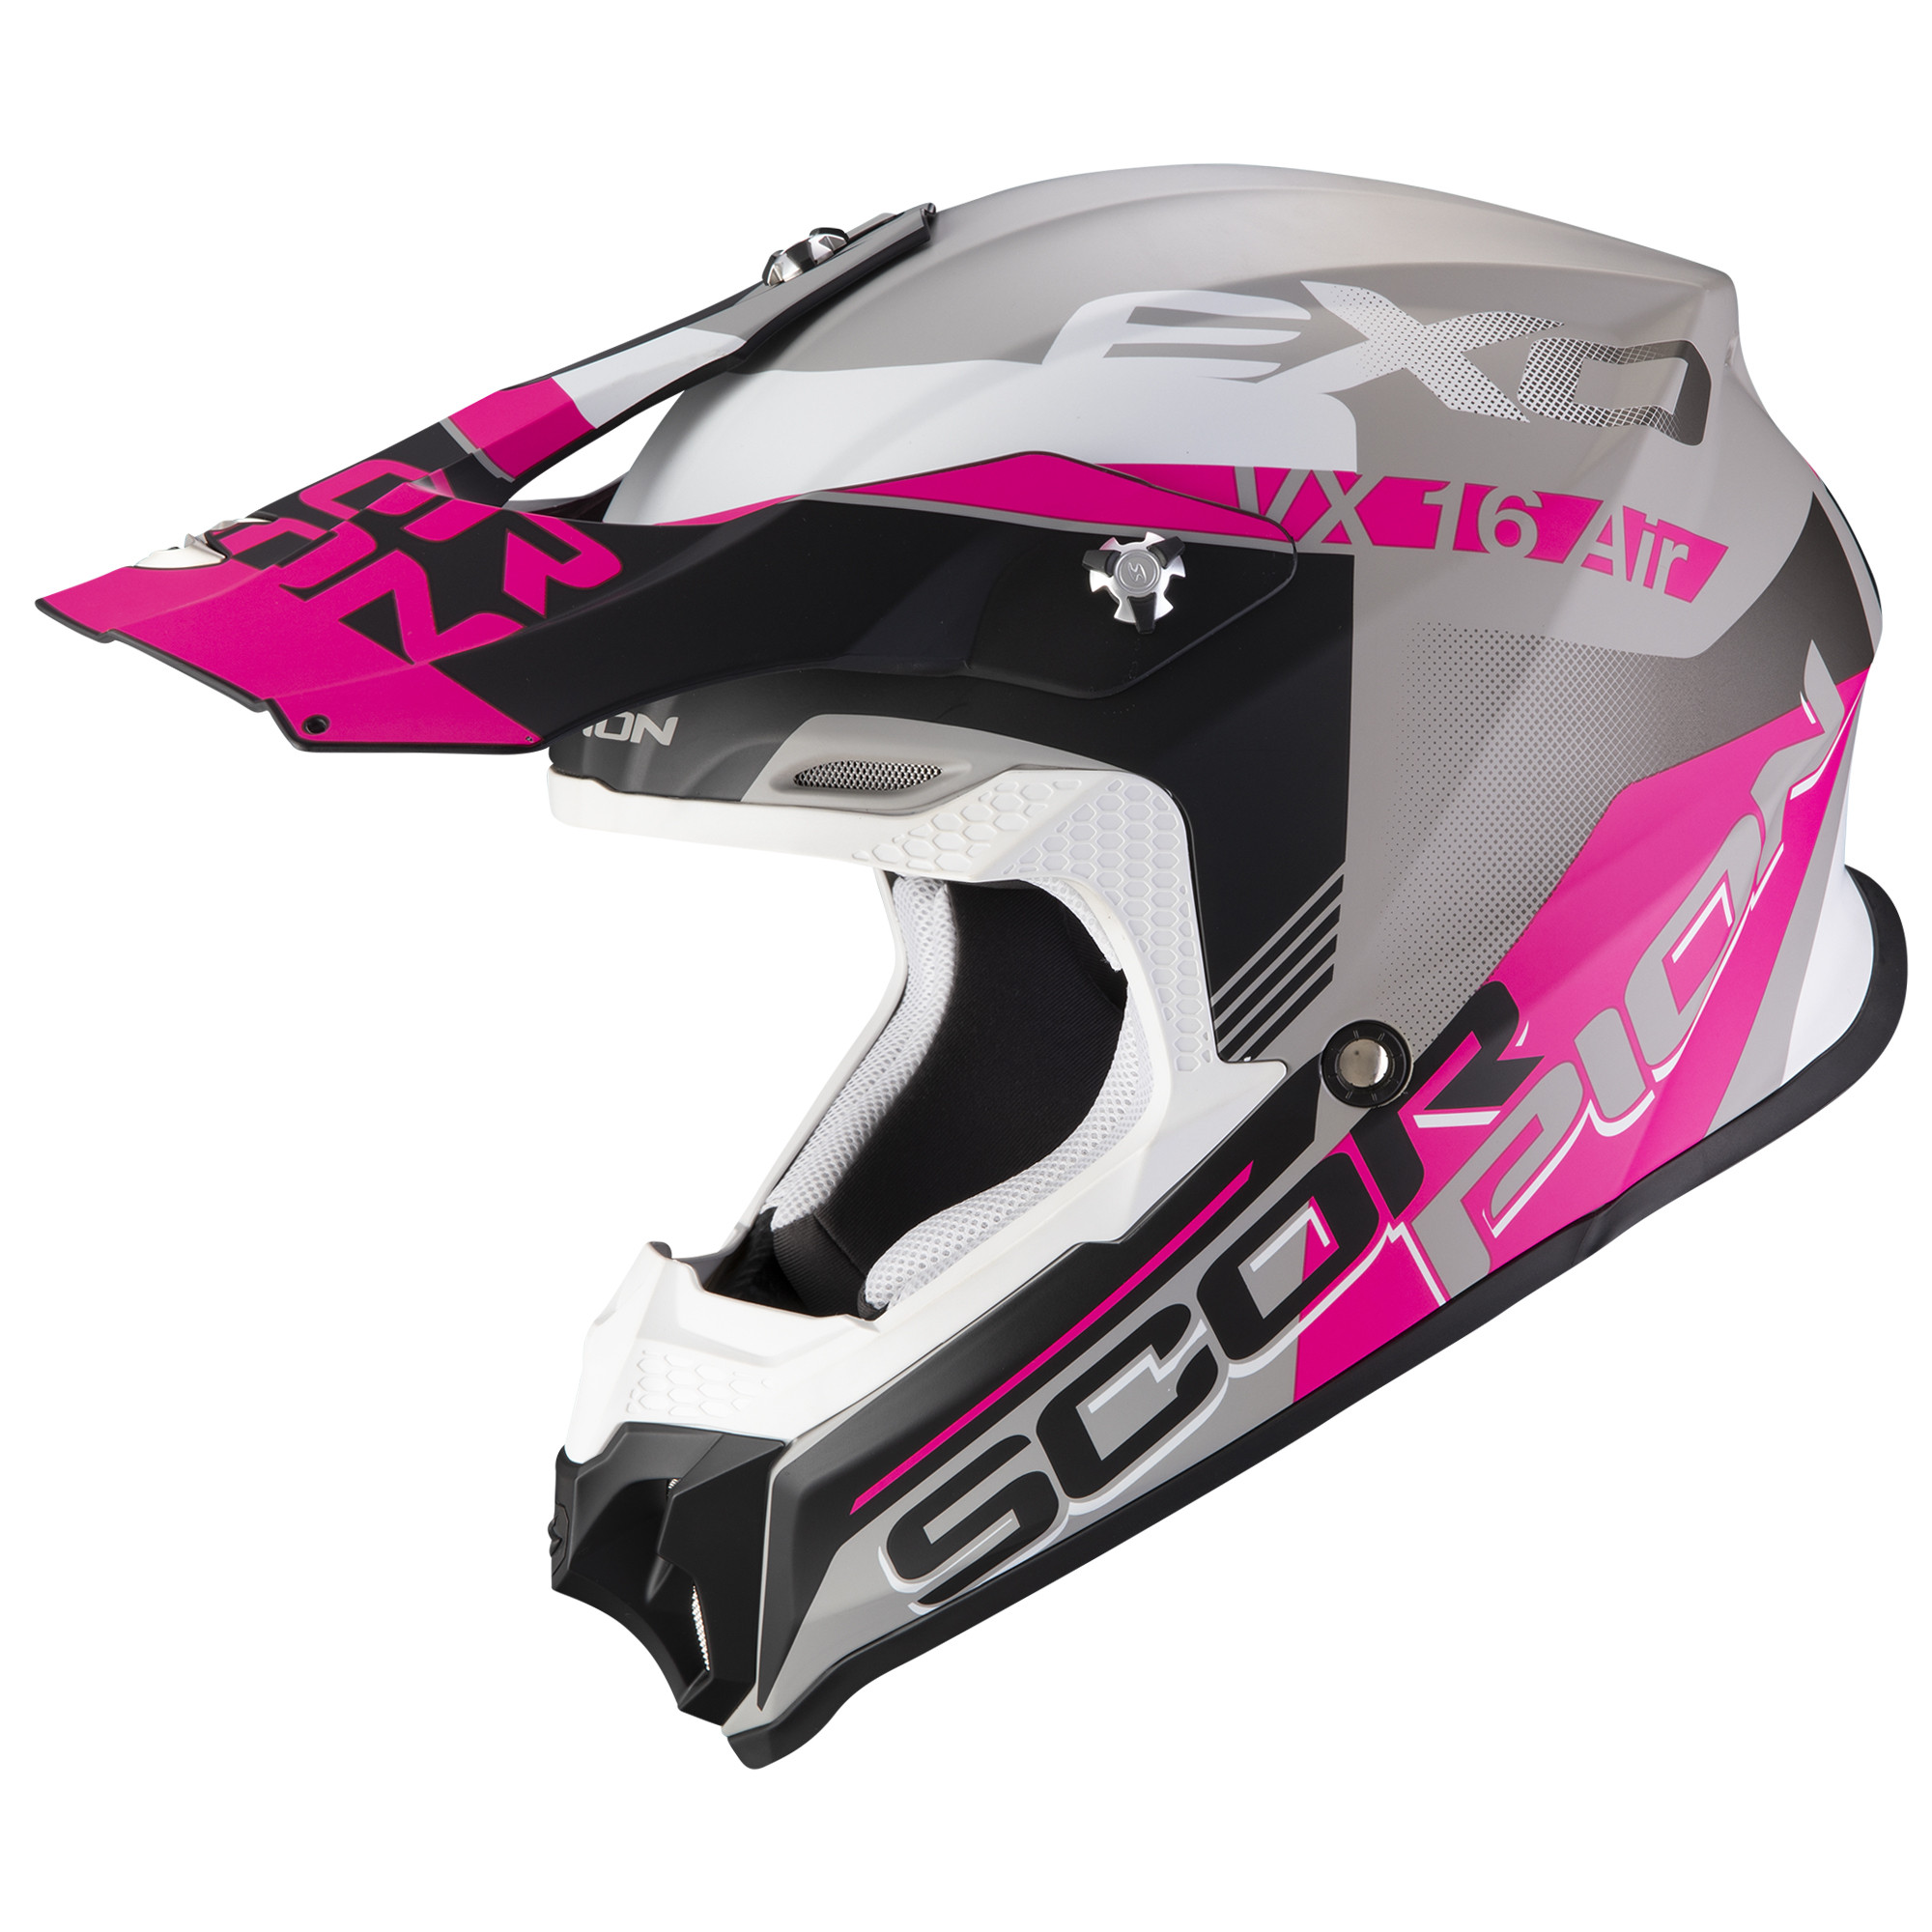 Scorpion Moto Cross Helm VX-16 AIR AHRUS Matt Silber-Schwarz-Pink XS-XL